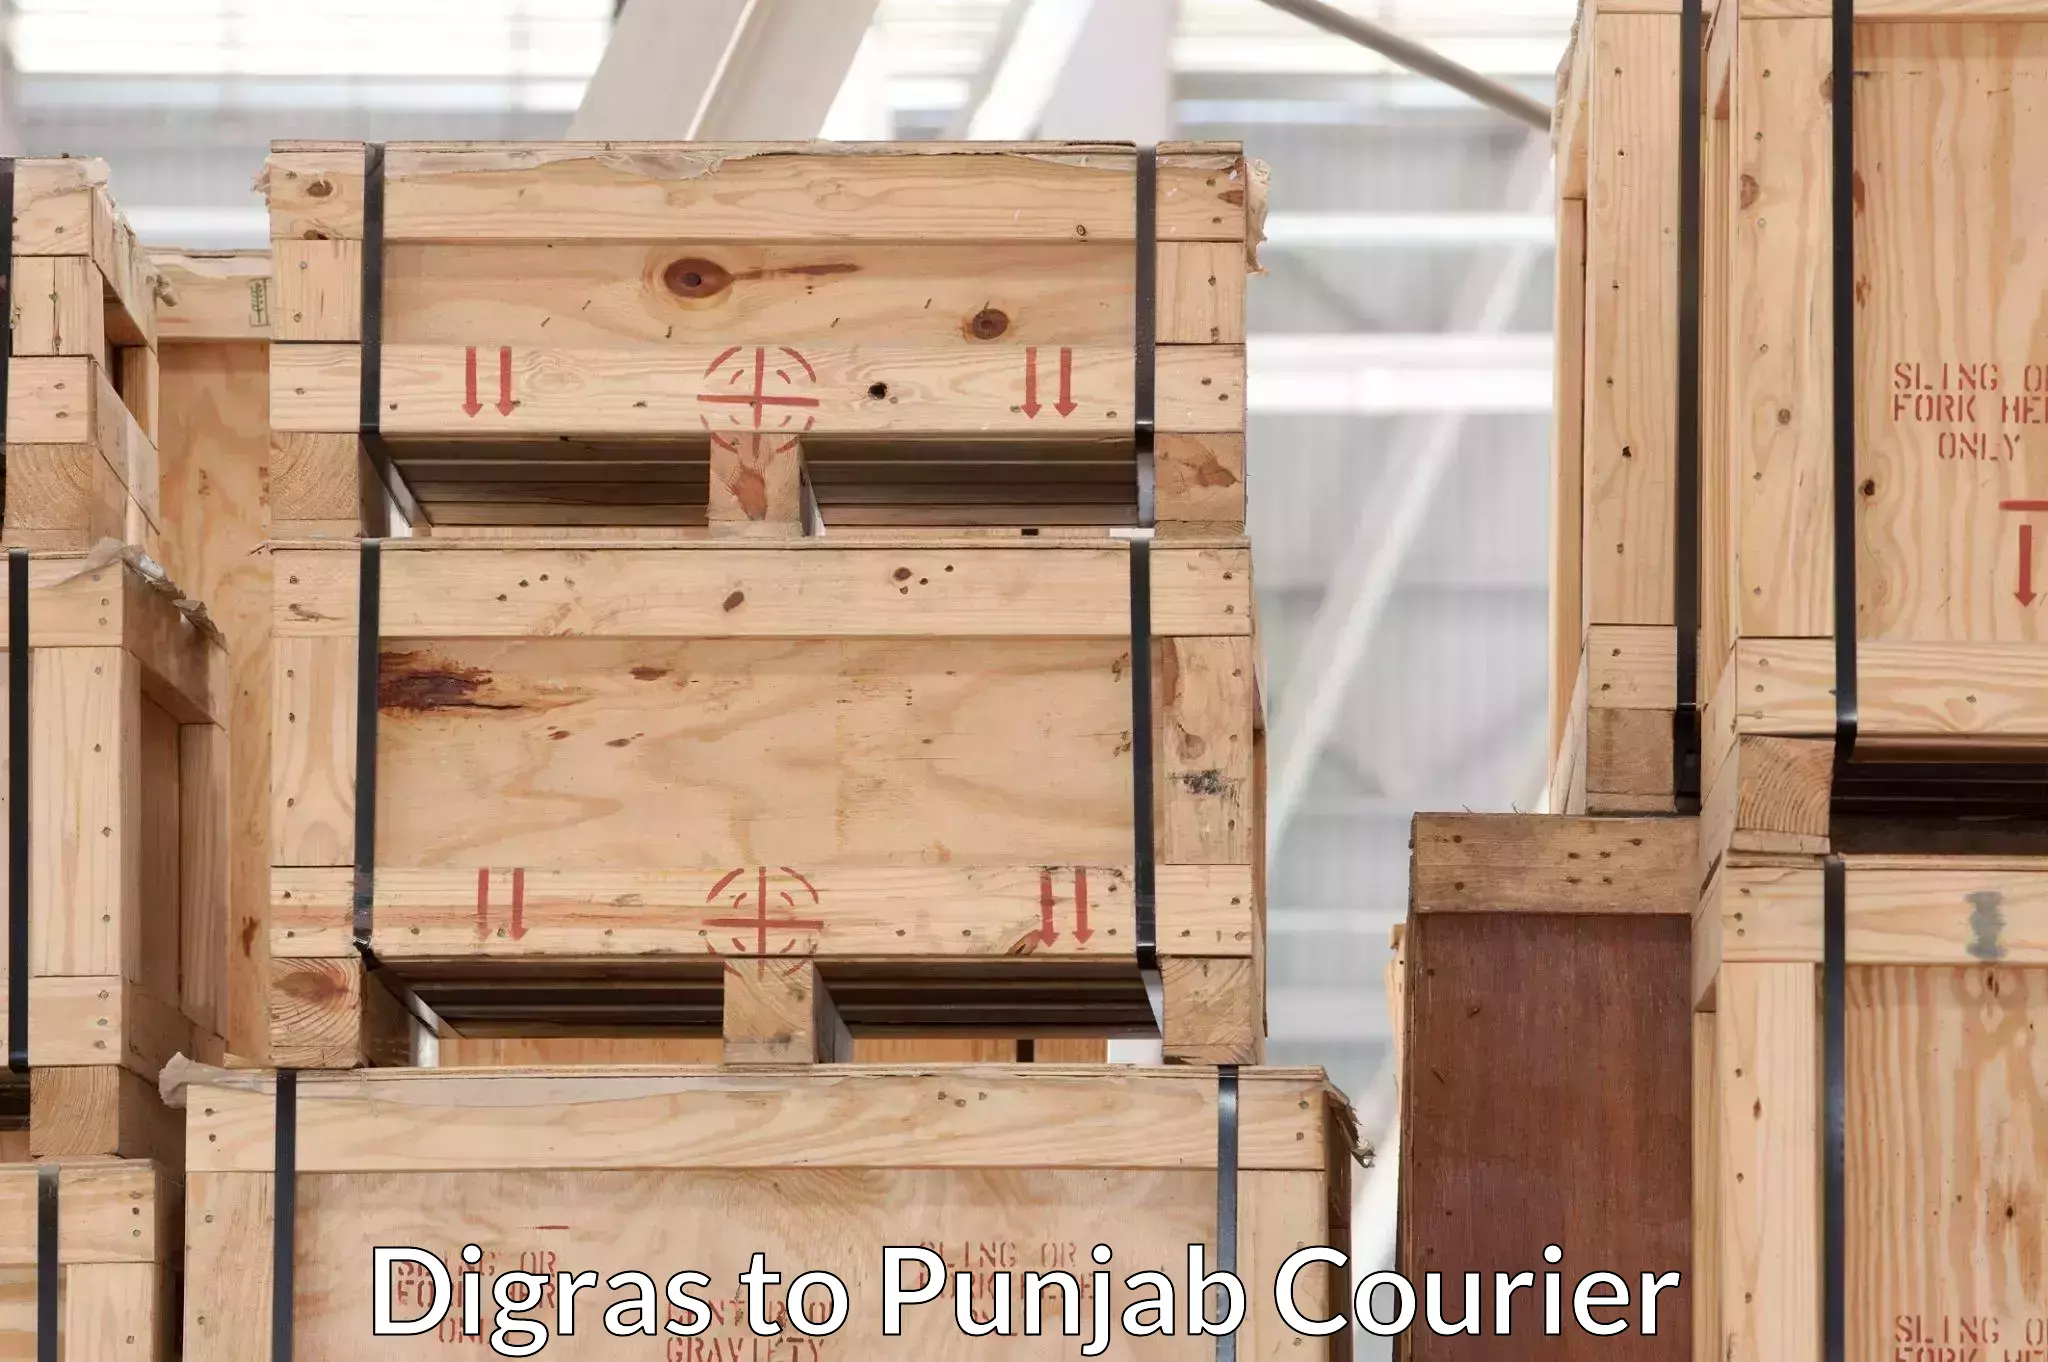 Quality furniture moving Digras to Punjab